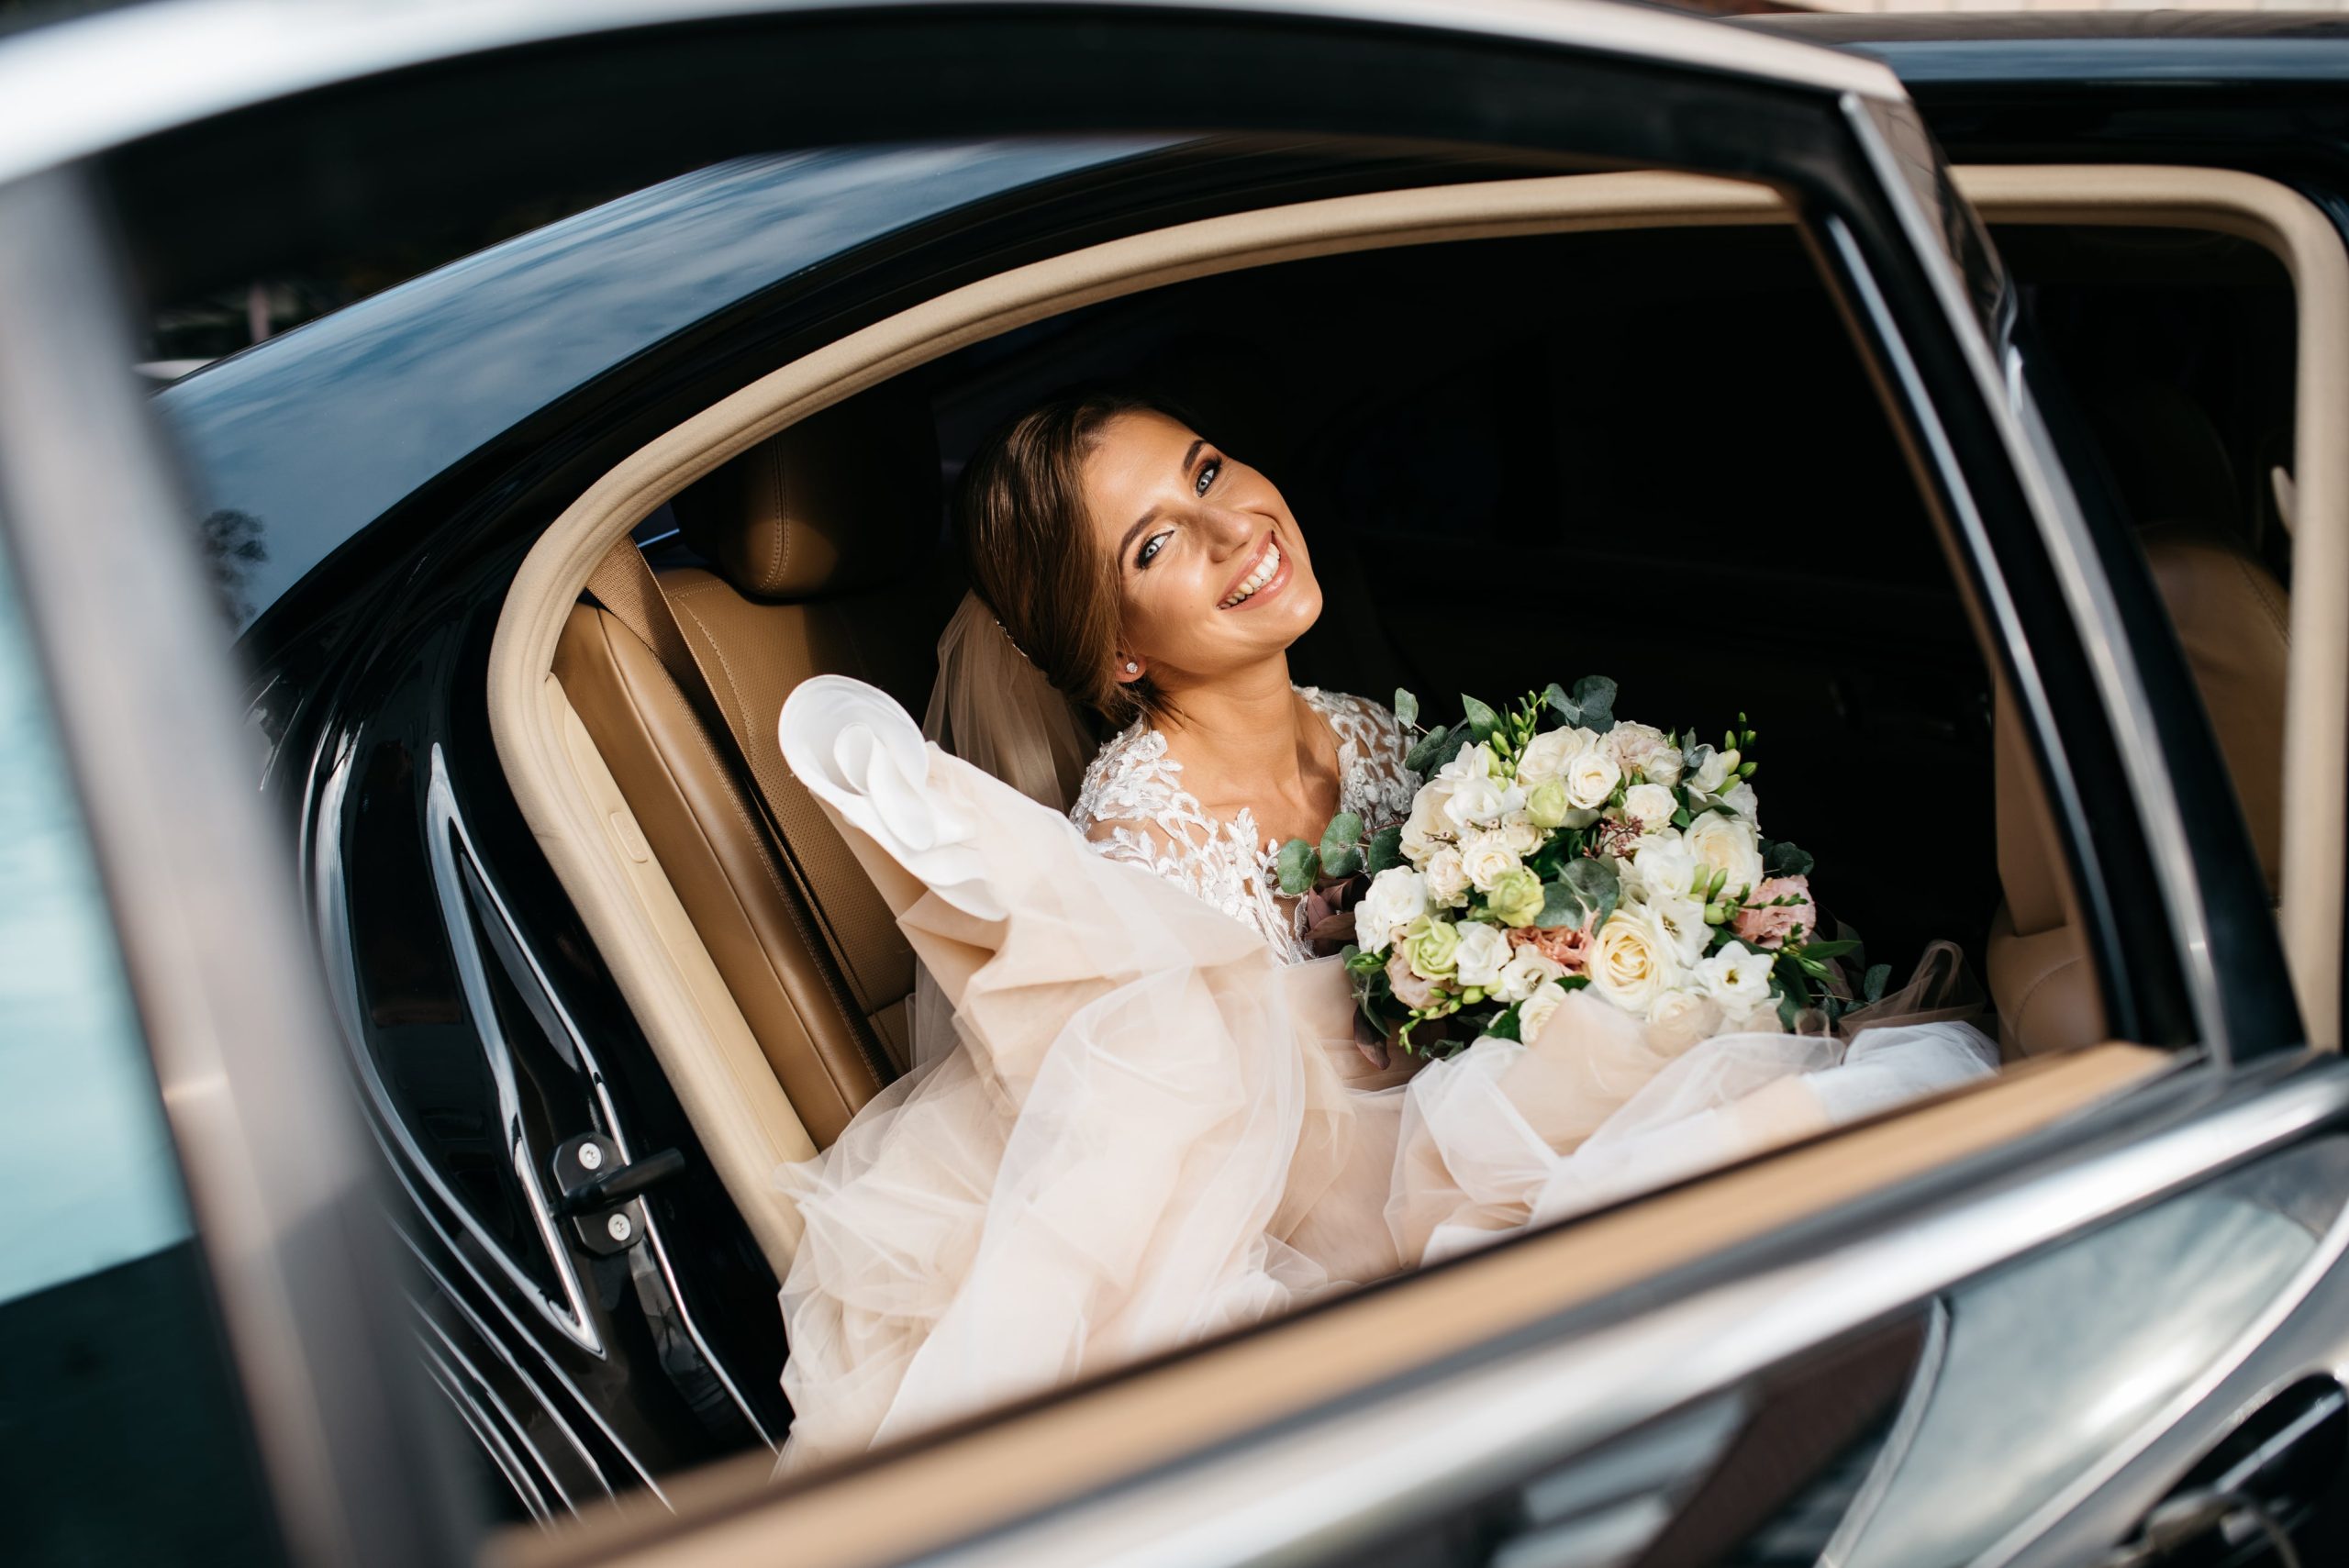 Kensington wedding cars – Chauffeur Hire